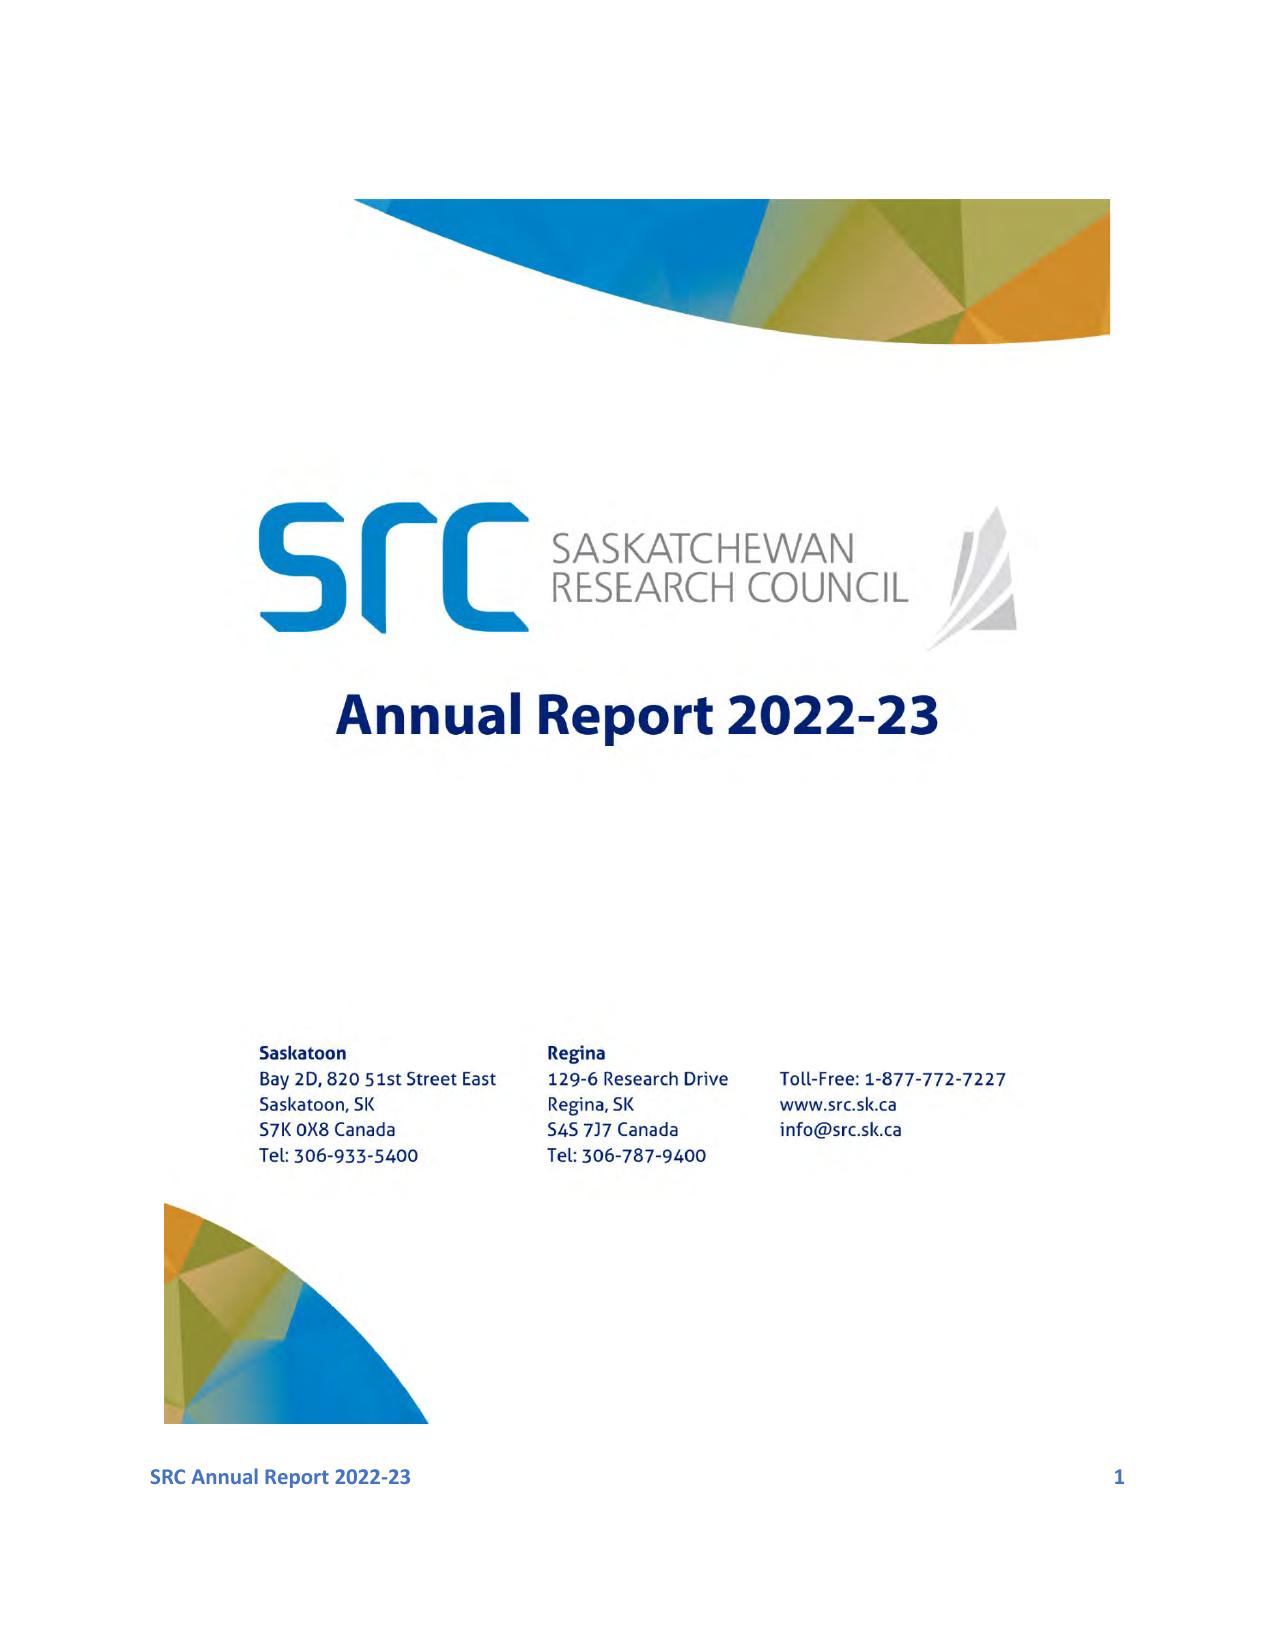 SRC.SK 2022 Annual Report